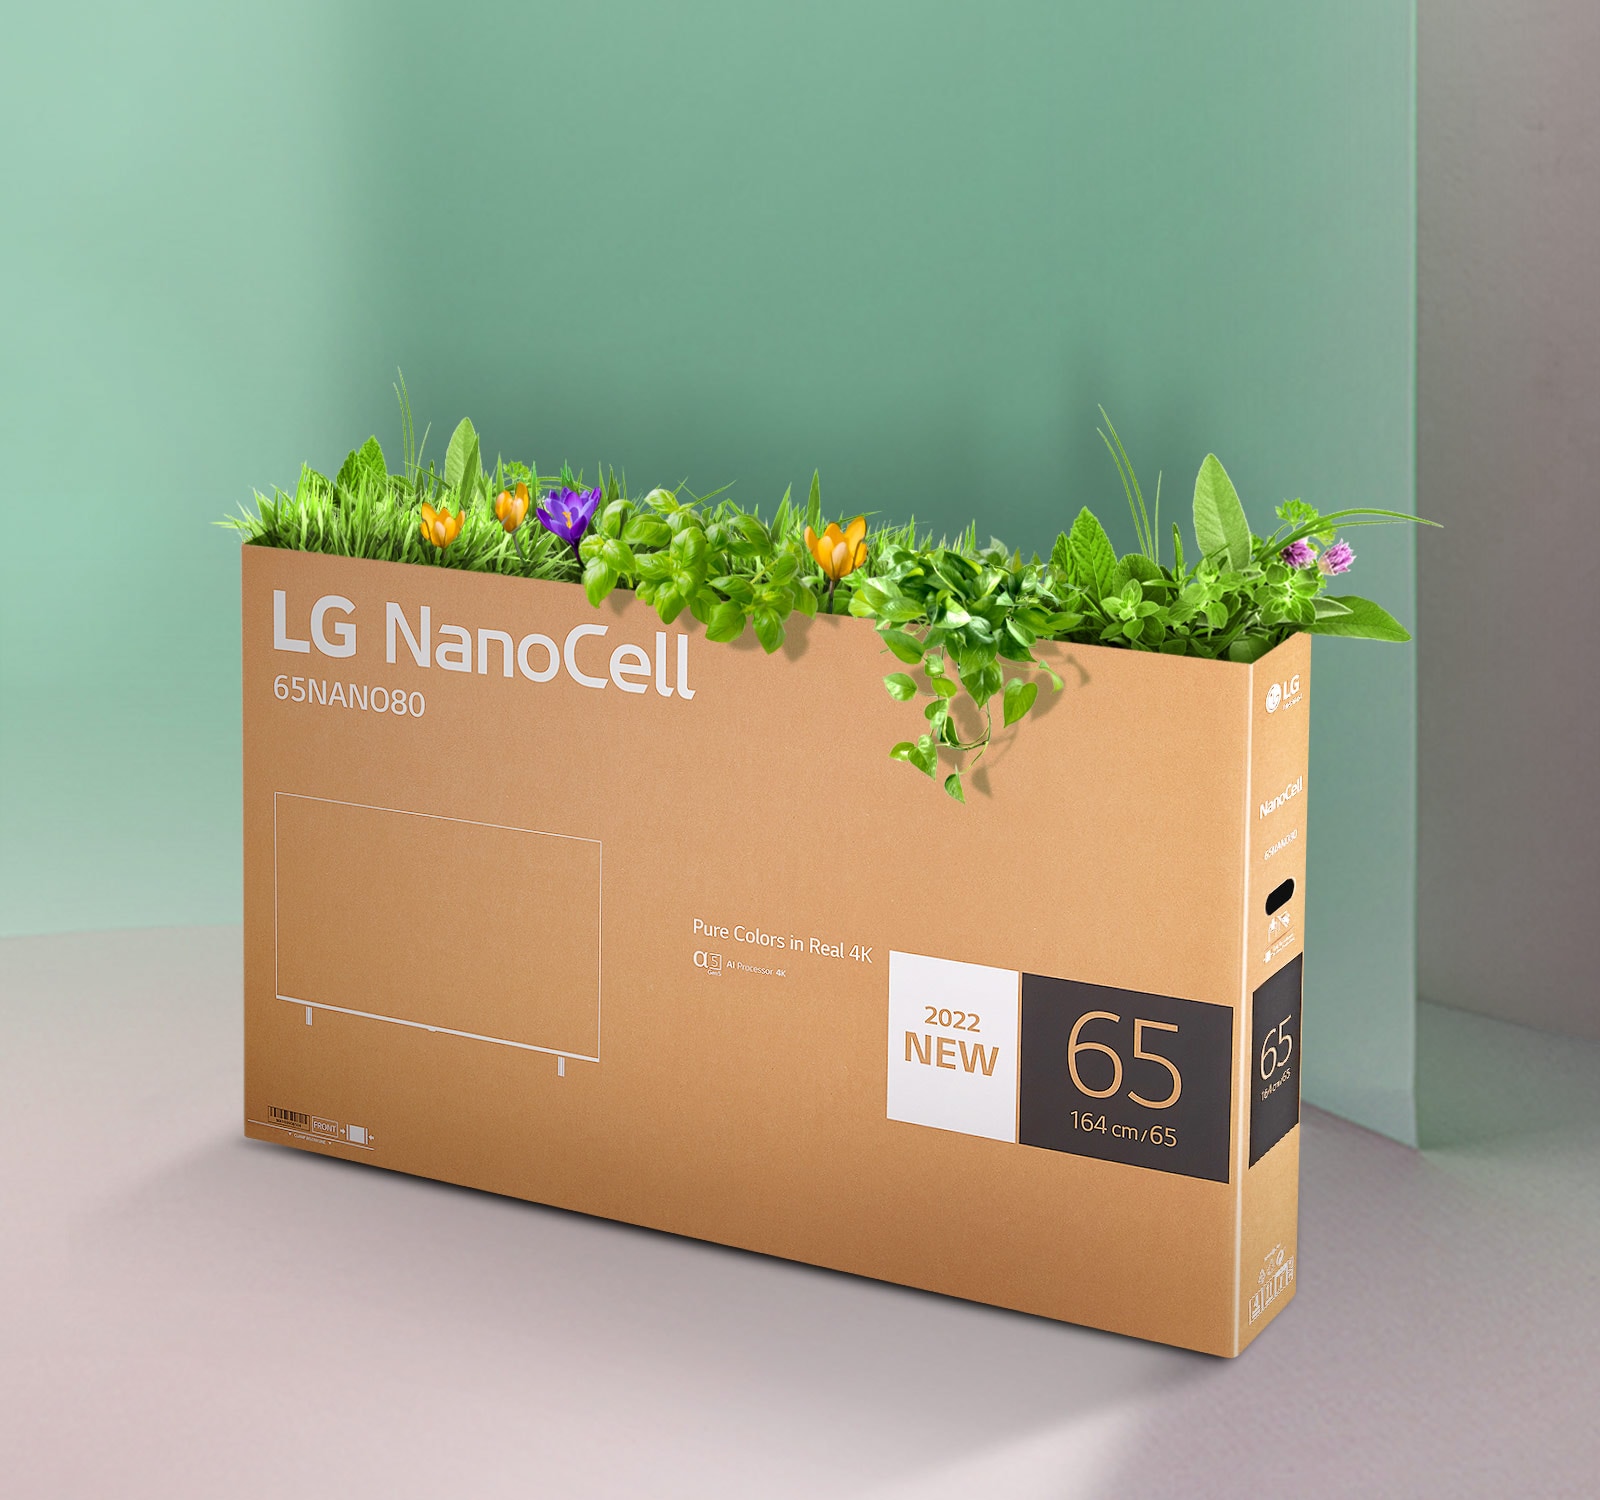 Перерабатываемая коробка телевизора LG NanoCell с цветами и растениями, растущими из верхней части коробки.